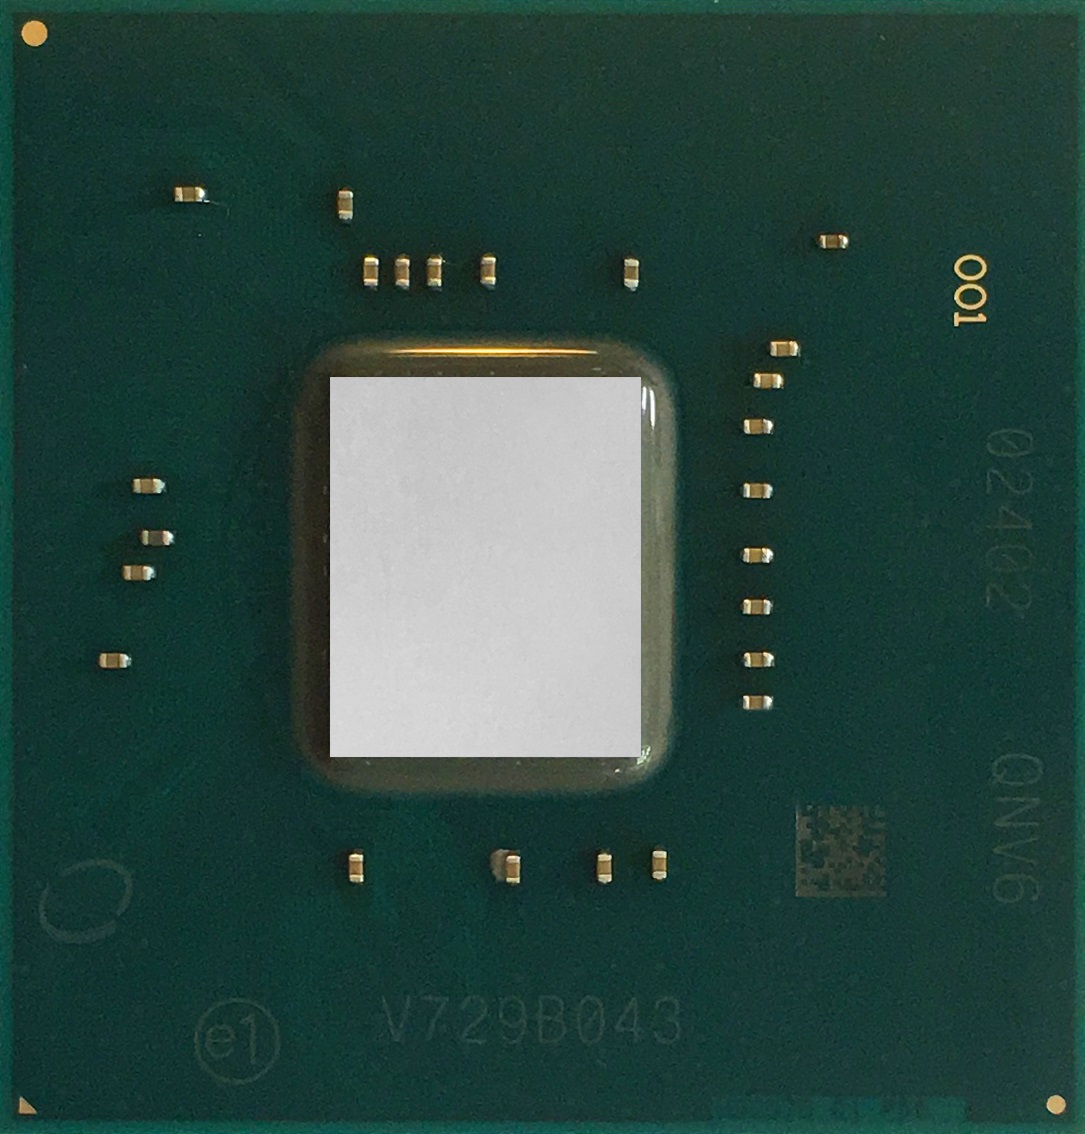 Immagine pubblicata in relazione al seguente contenuto: Intel lancia i processori Xeon E-2100 per workstation entry-level potenti | Nome immagine: news28448_Intel-Xeon-E-2100_2.jpg